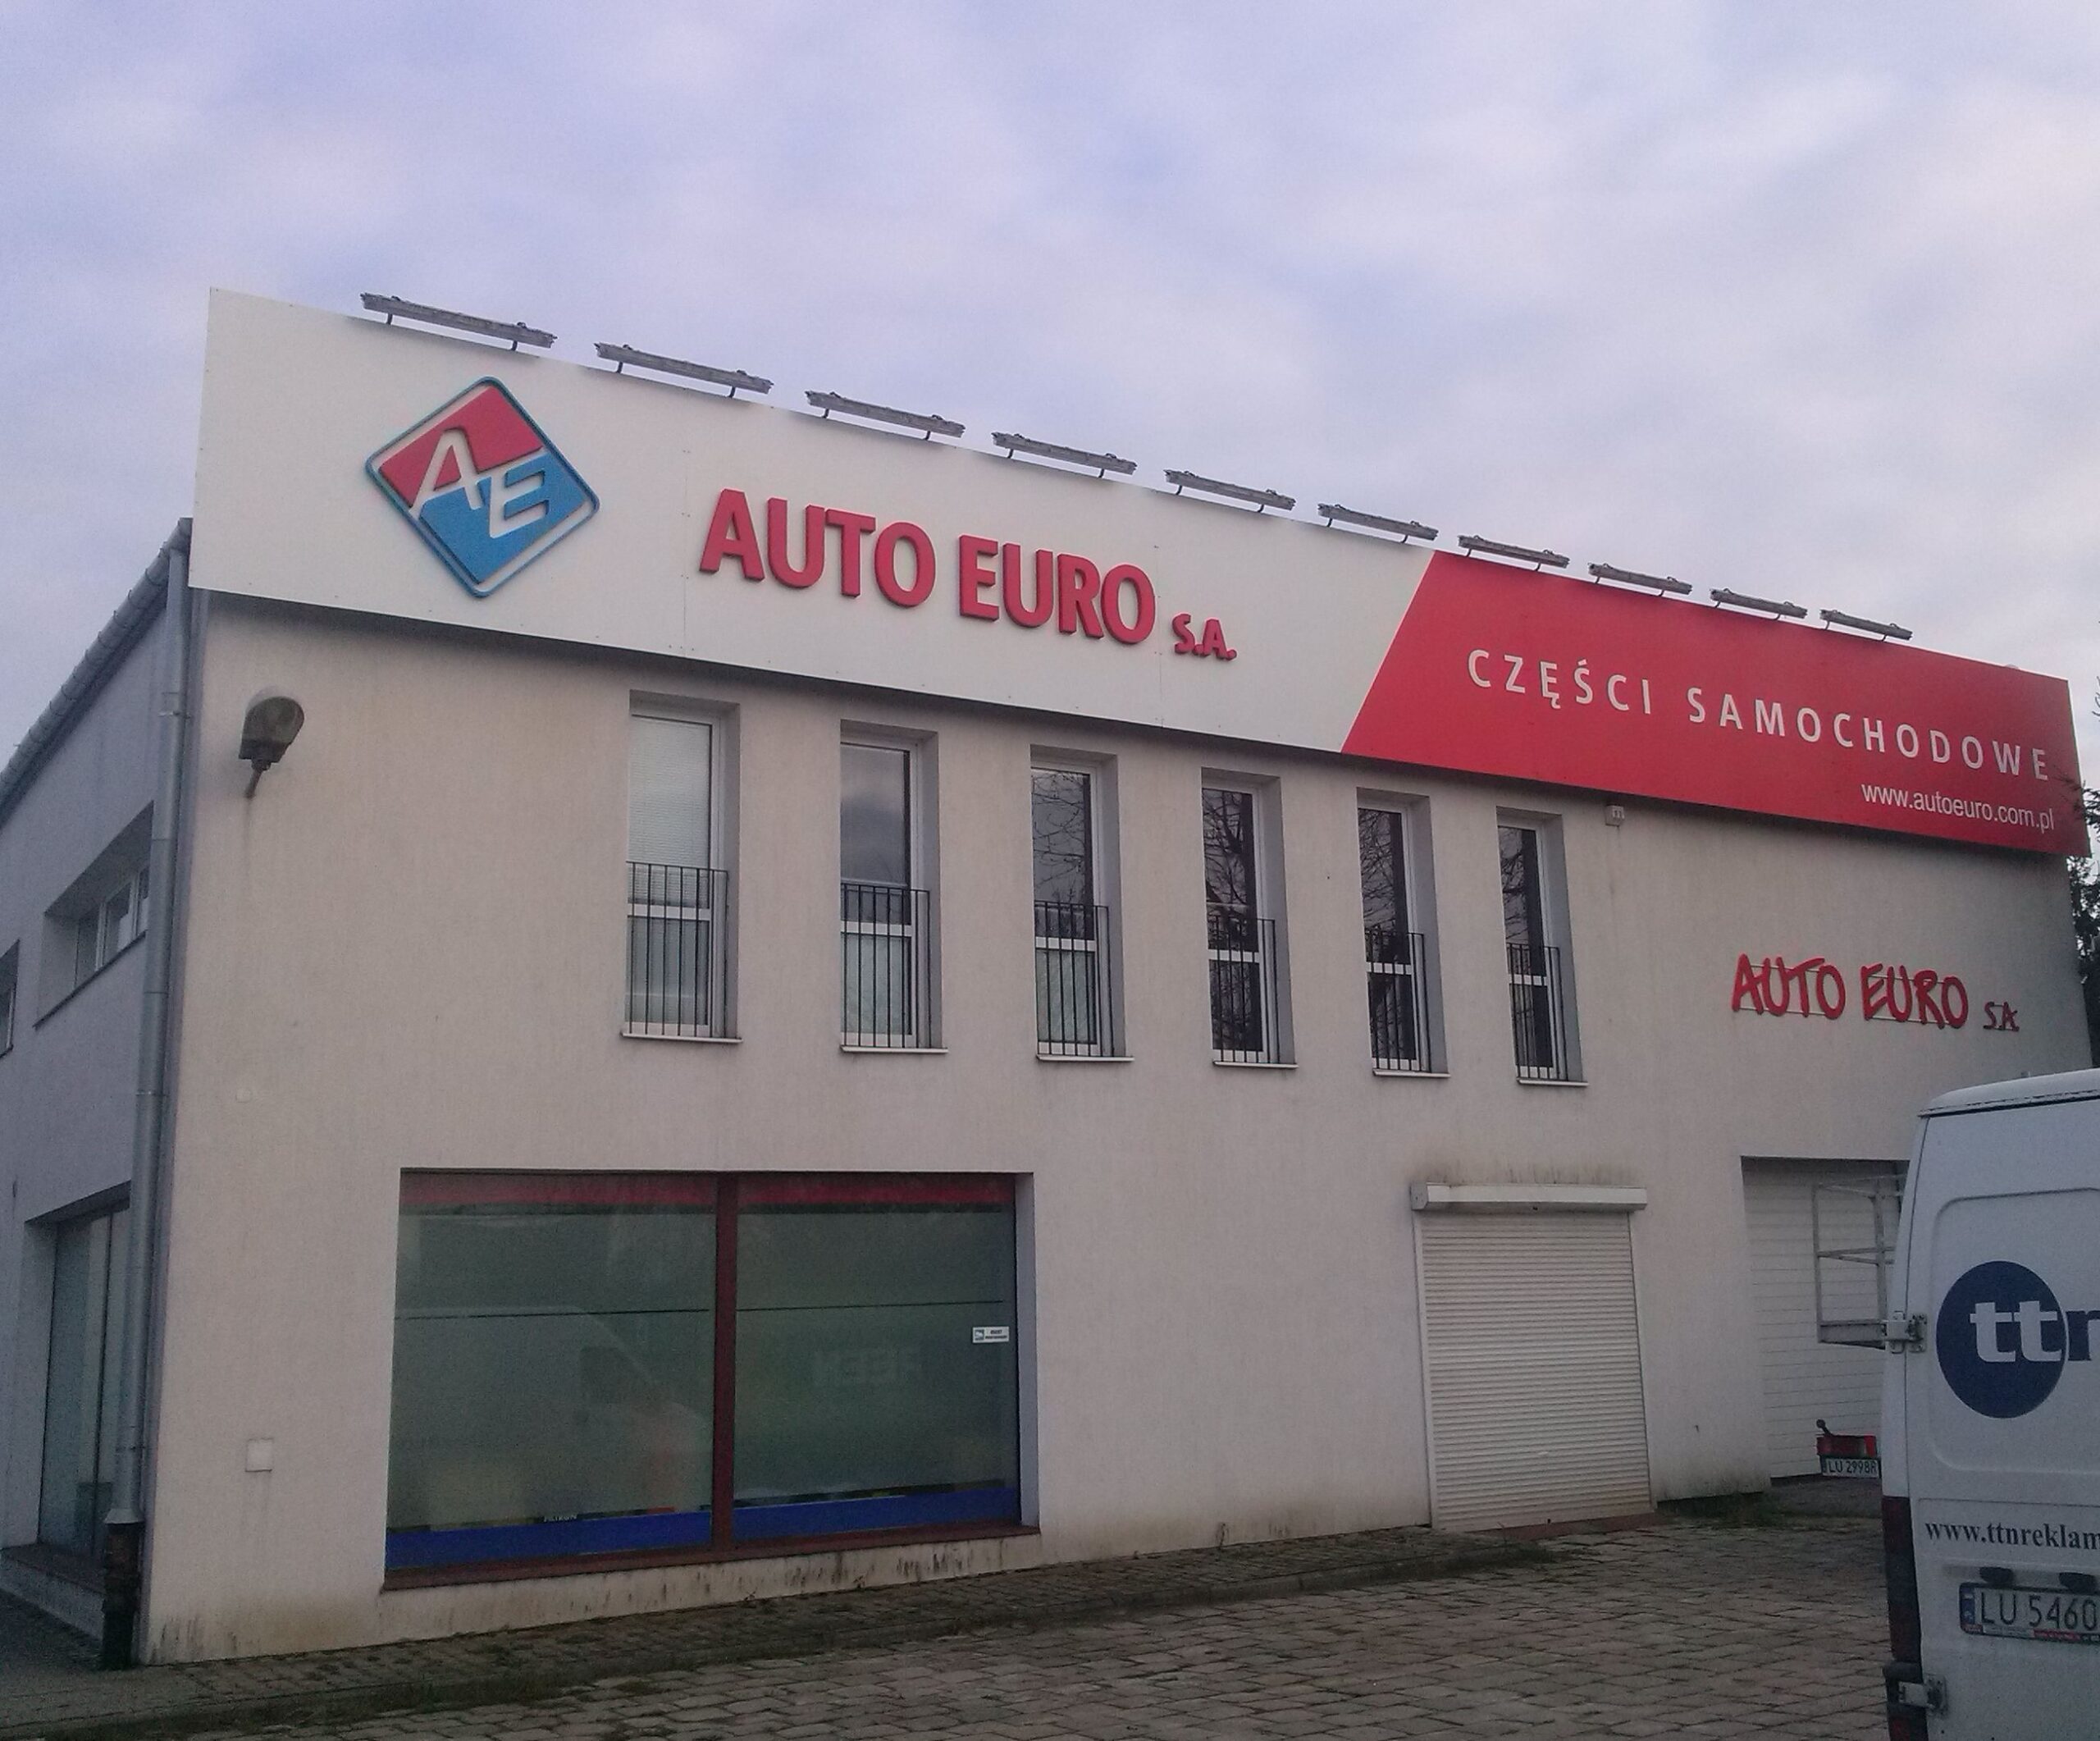 Auto Euro - szyldy plansze tablice reklamowe